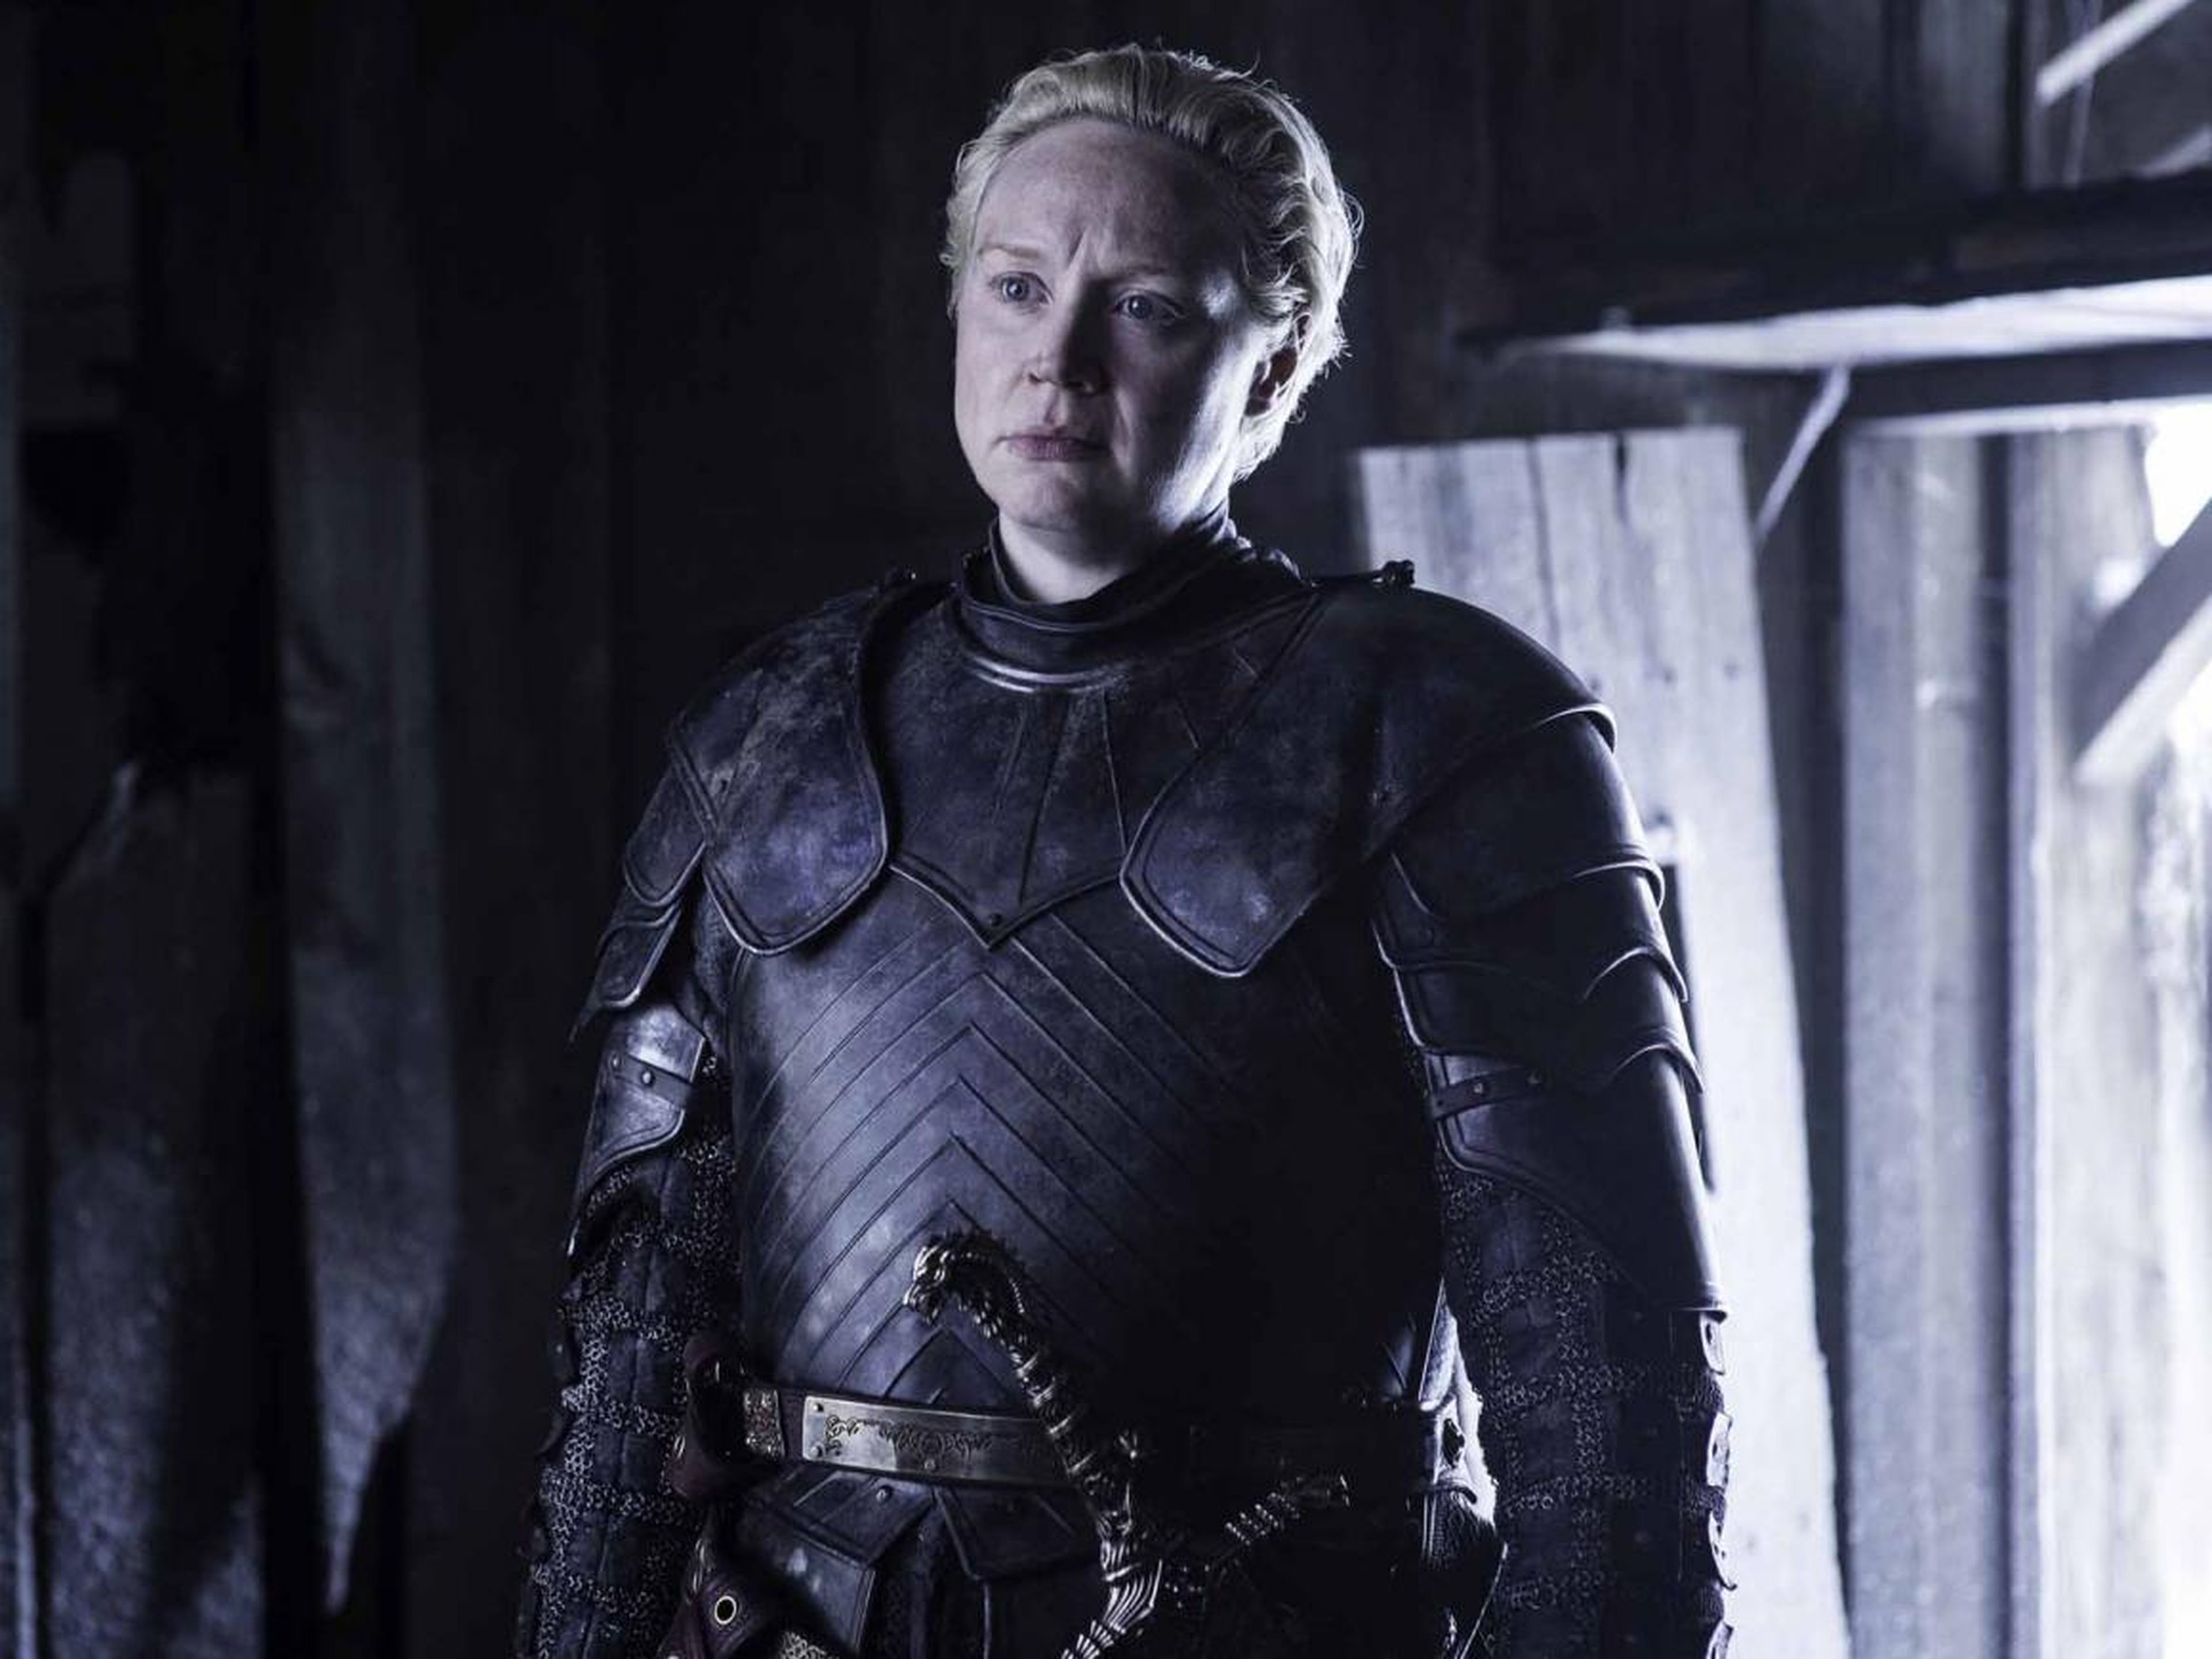 Ser Brienne of Tarth in all her glory.